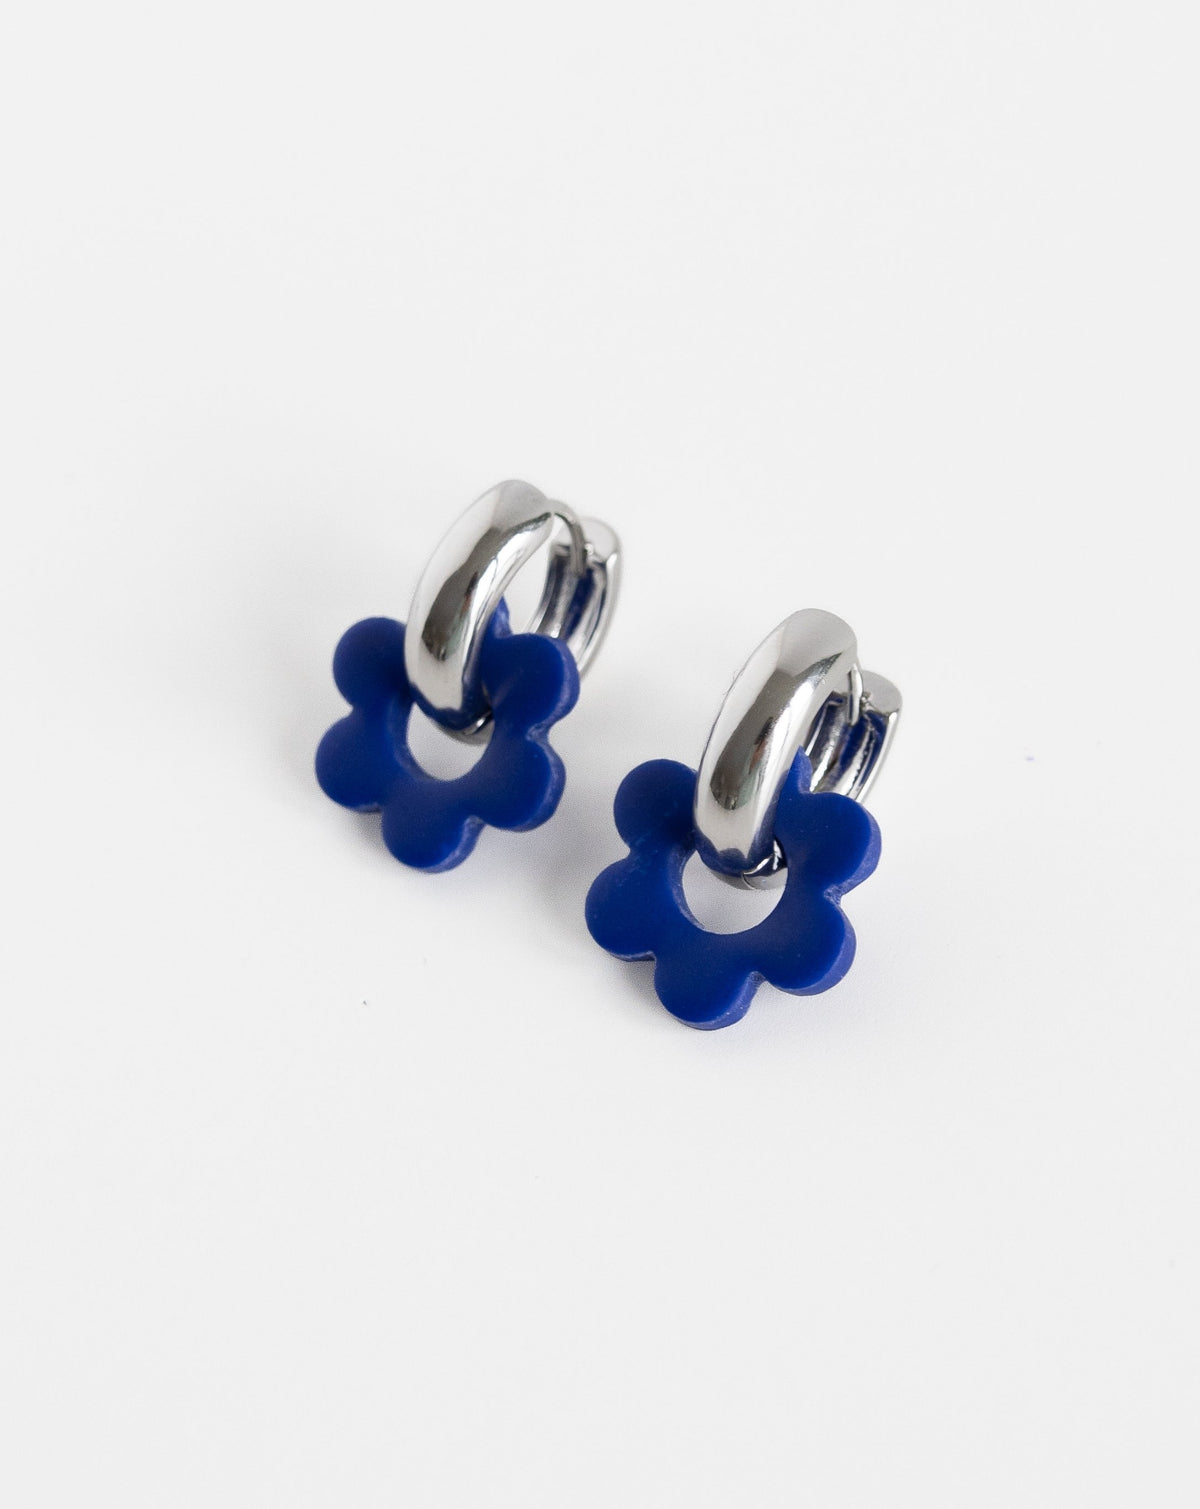 hue blue color Goli Bold earrings in silver hoops